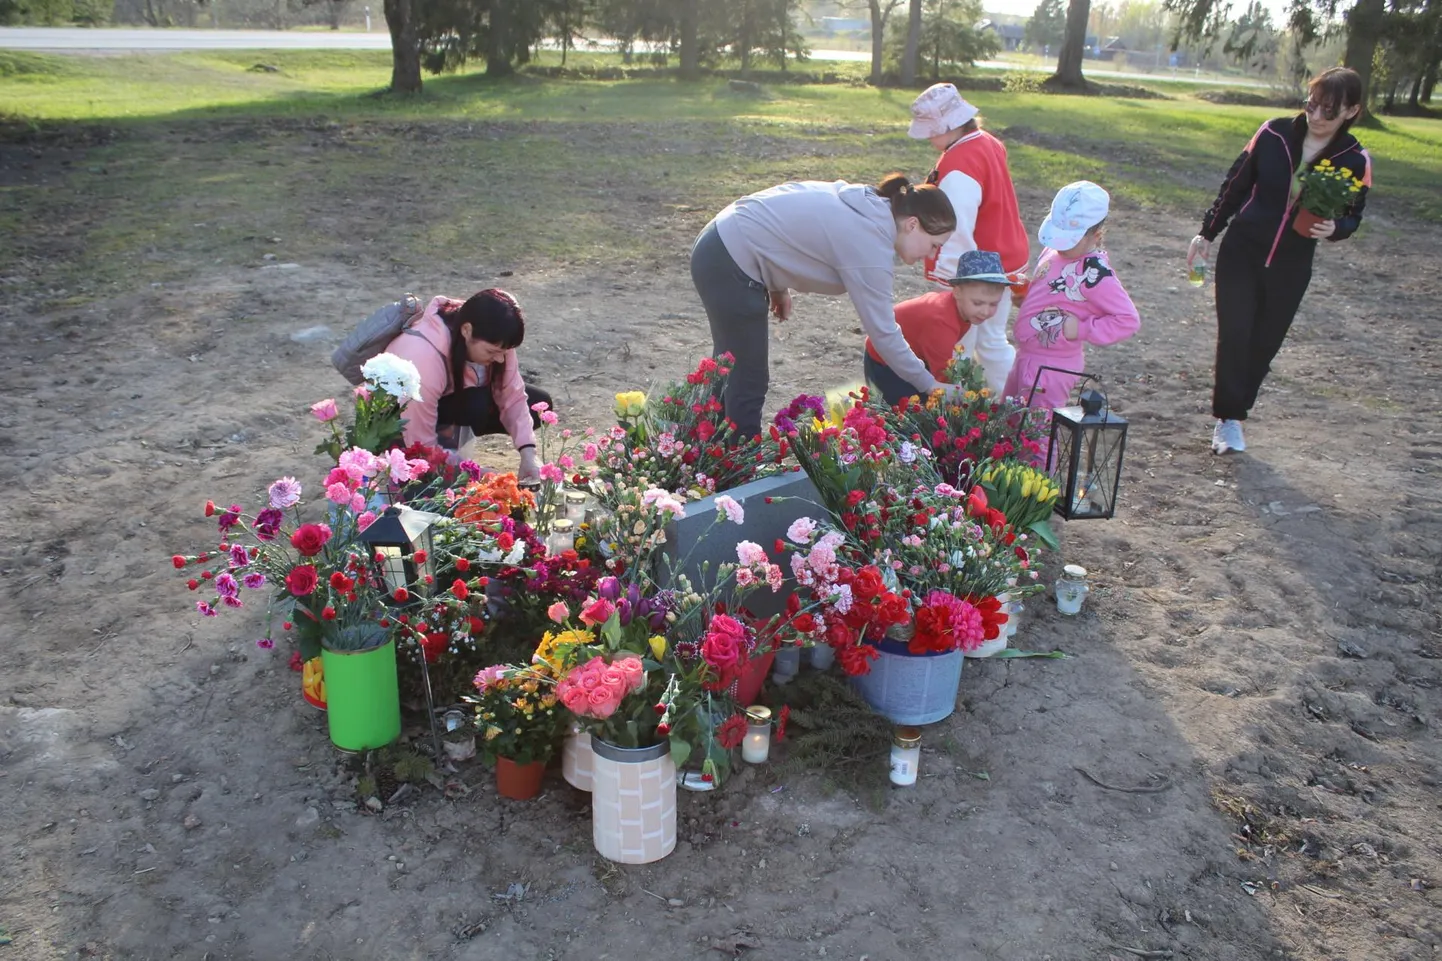 Leena (keskel halli jakiga) ja Katja (vasakul roosas) lastega Tapa vennashaua monumendi endisele asukohale 9. mail lilli toomas.